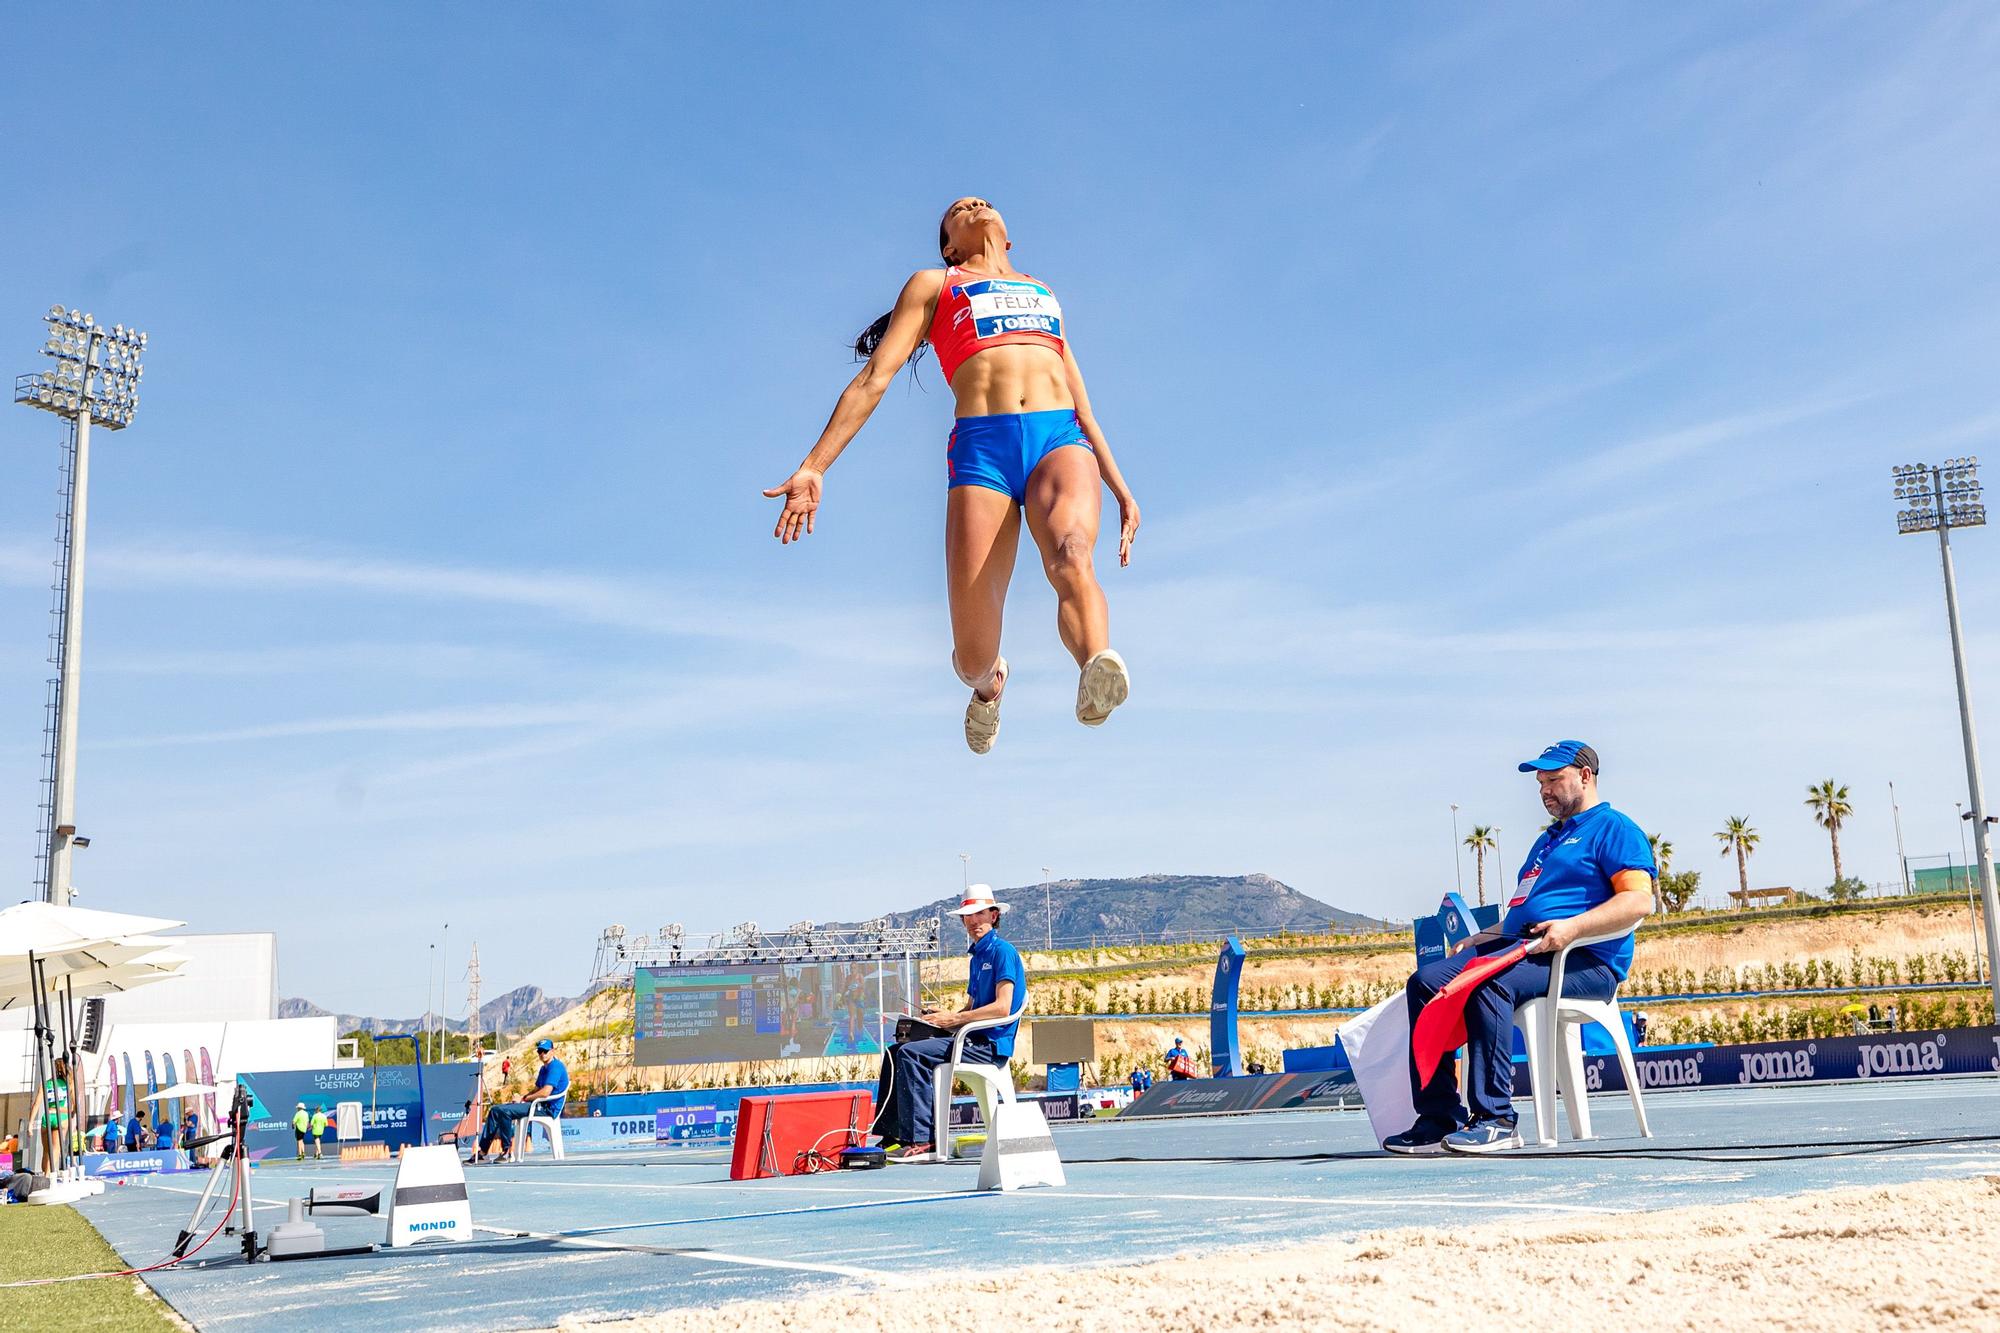 España terminó en primera posición del XIX Campeonato Iberoamericano de Atletismo “Alicante 2022”. El atleta de Onil Eusebio Cáceres se reencuentra con sus mejores sensaciones y gana en La Nucía con un salto de 8,05 metros.